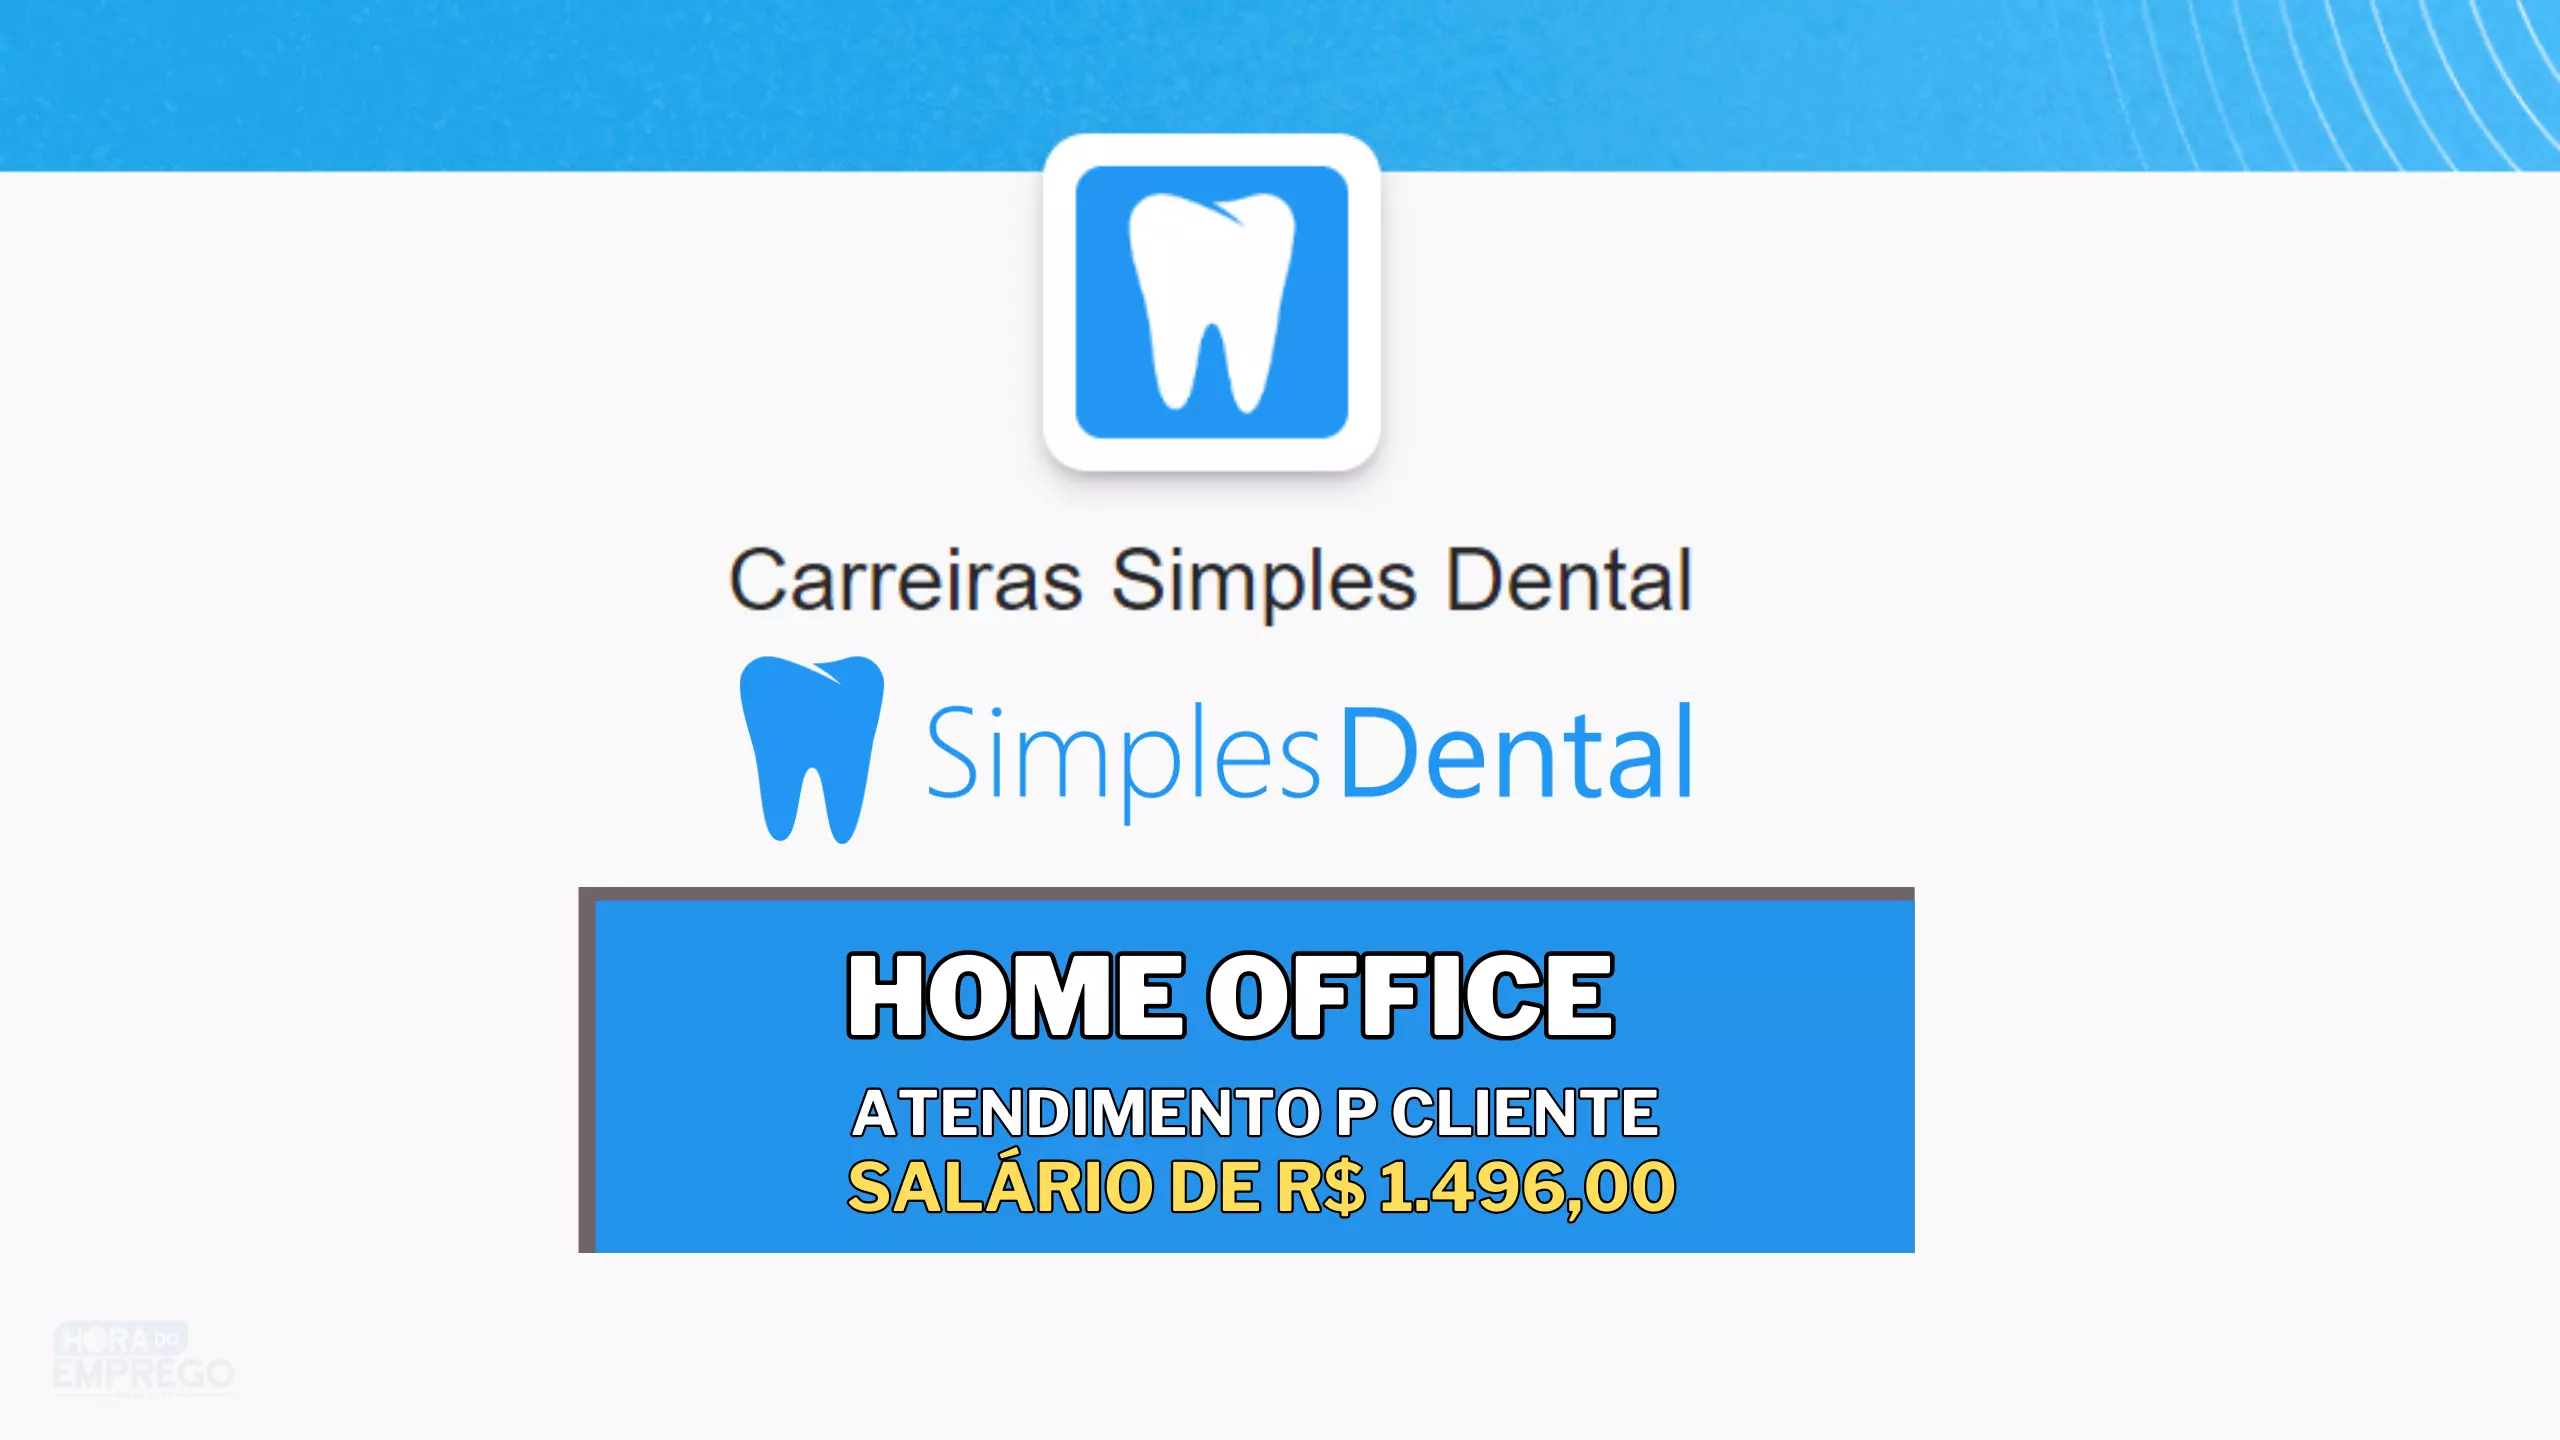 Simples Dental abre vaga HOME OFFICE para Atendimento ao Cliente com salário de R$ 1.496,00 e R$ 150,00 de Auxílio Home Office